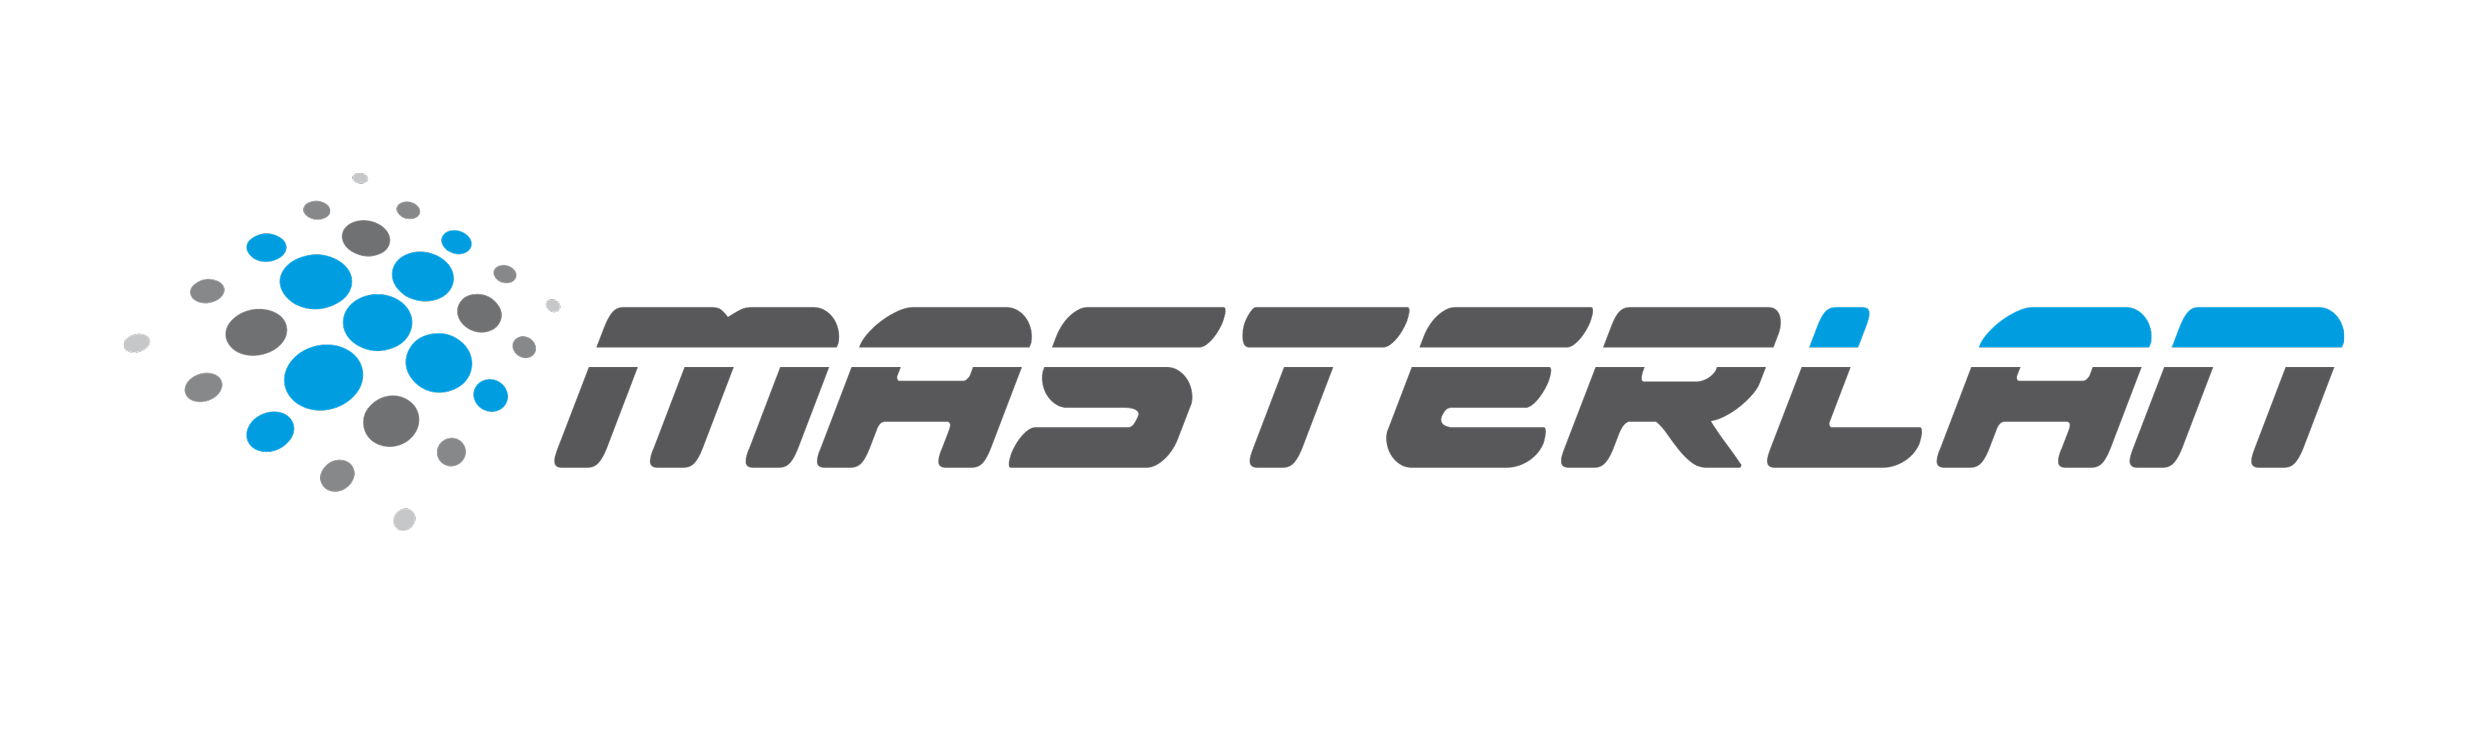 Masterlan color logo